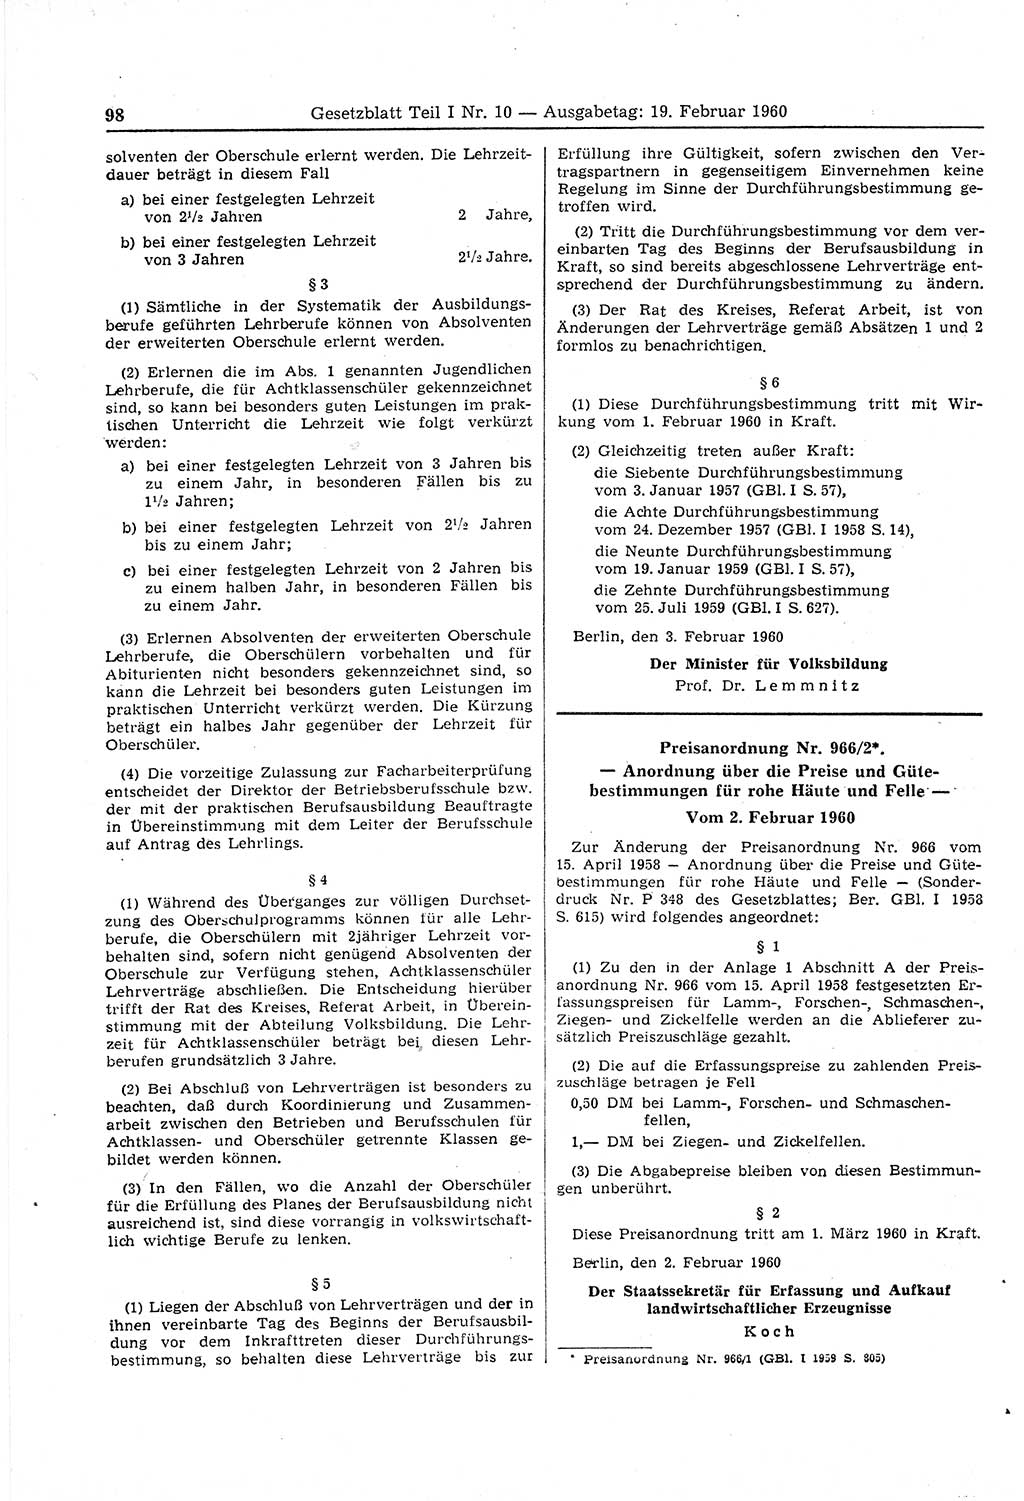 Gesetzblatt (GBl.) der Deutschen Demokratischen Republik (DDR) Teil Ⅰ 1960, Seite 98 (GBl. DDR Ⅰ 1960, S. 98)